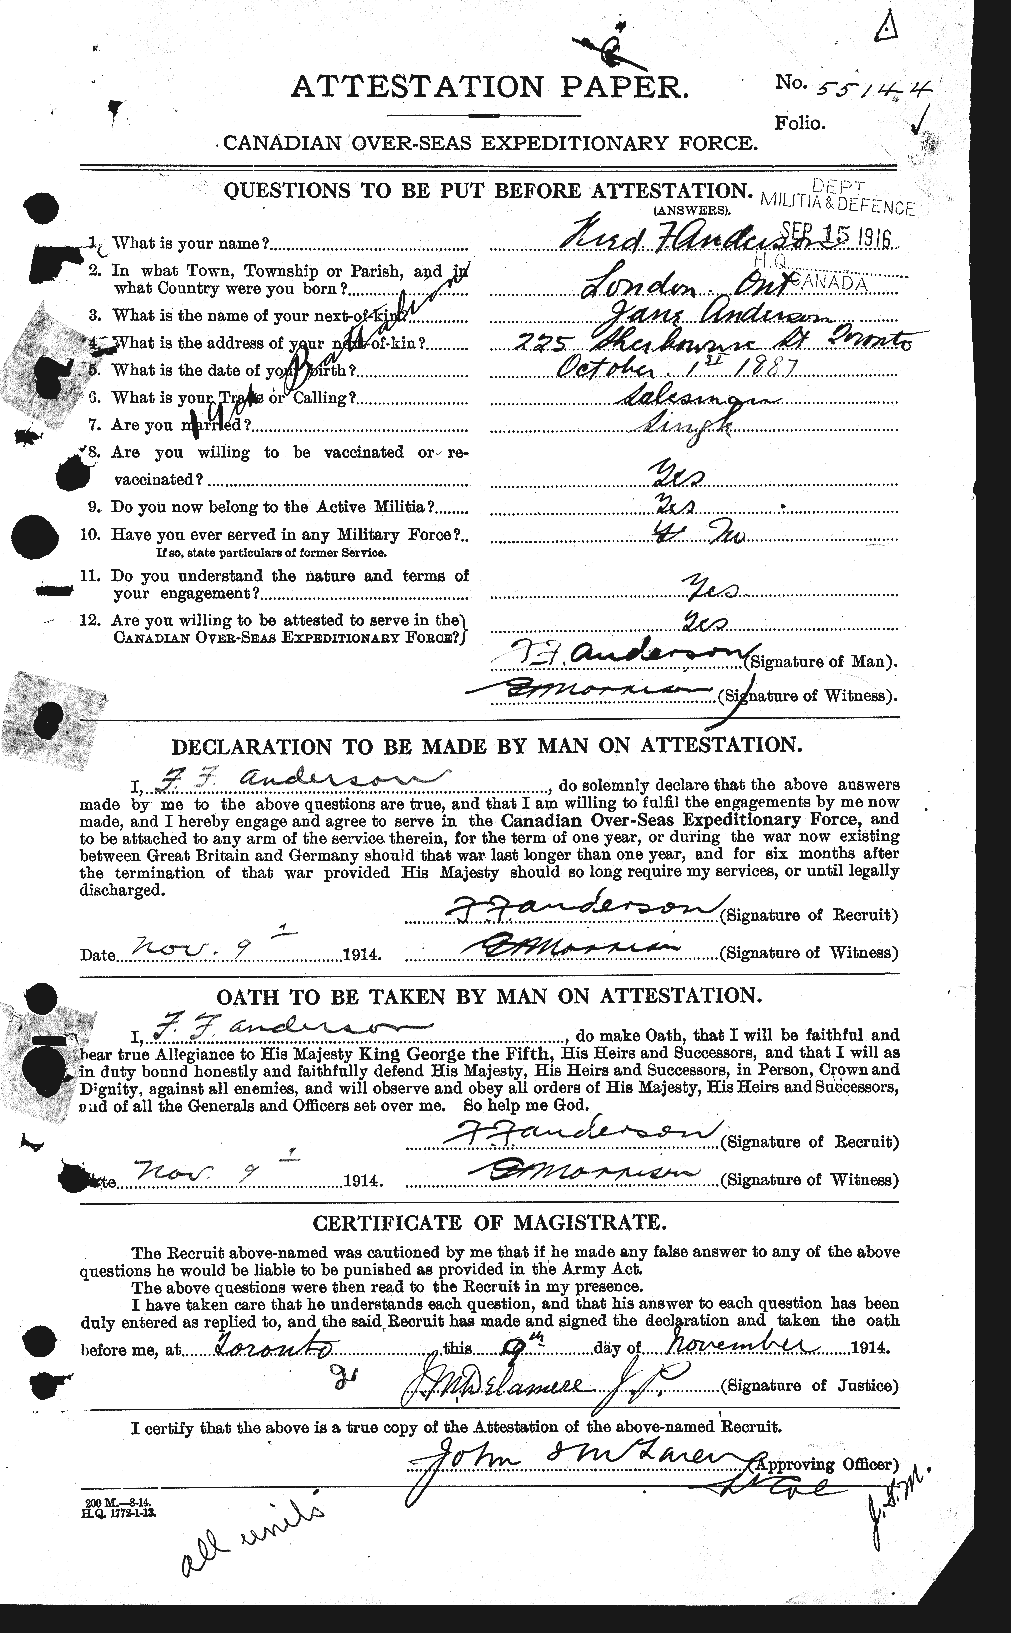 Dossiers du Personnel de la Première Guerre mondiale - CEC 209834a